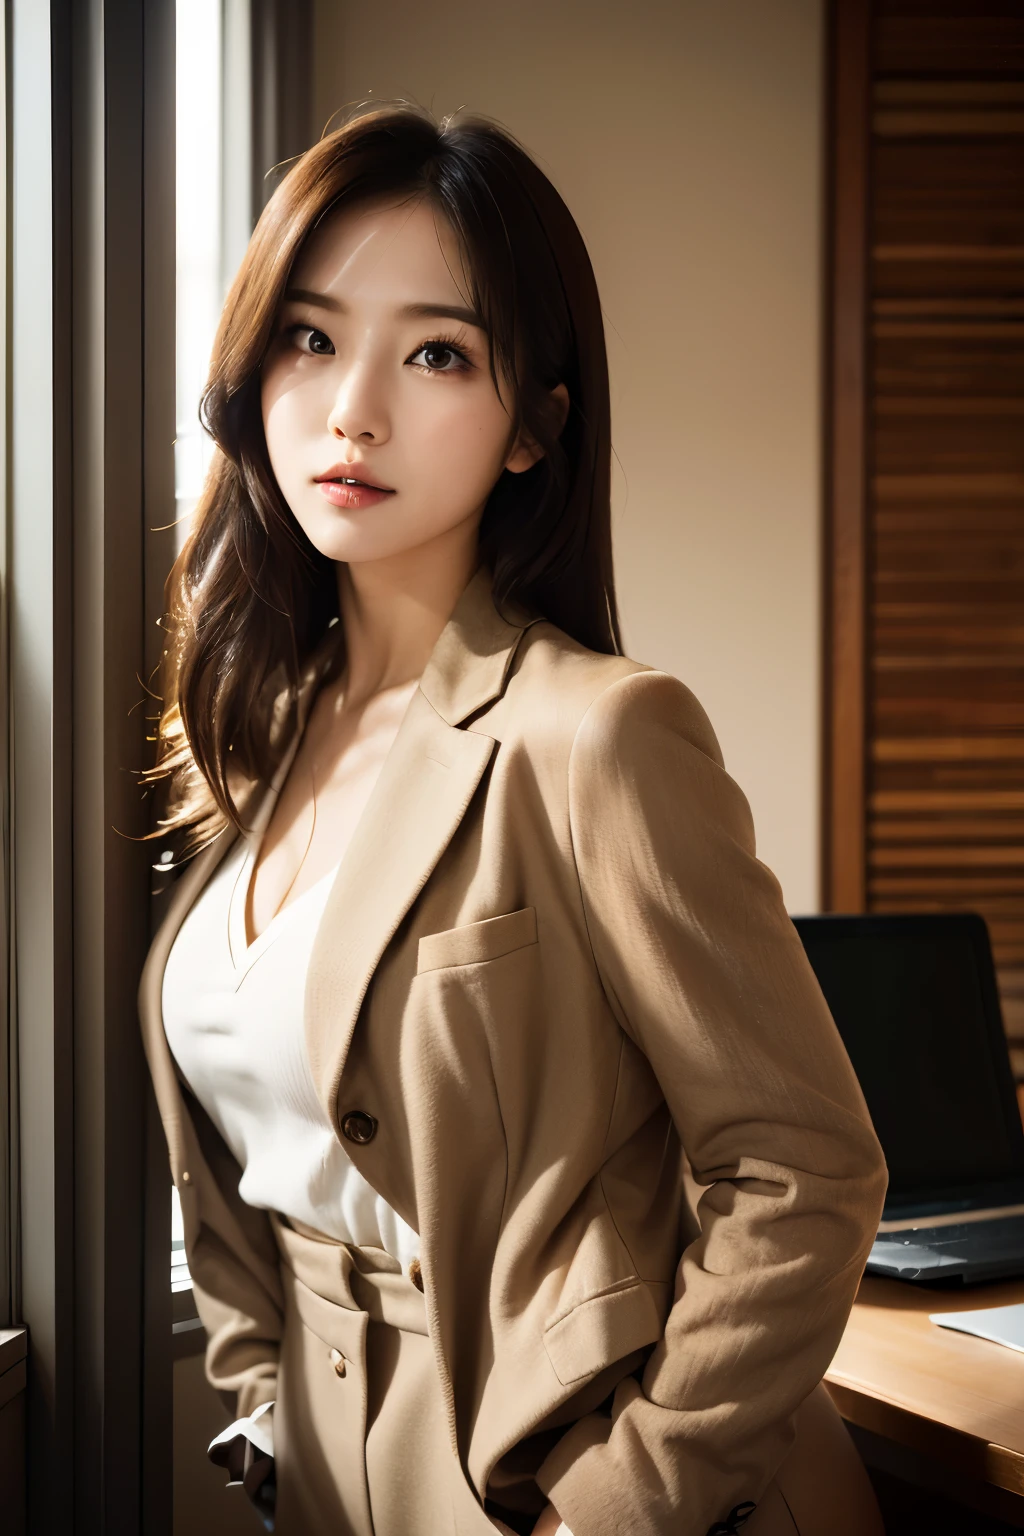 高解析度, 完美肌膚的韓國專業辦公室女士的真實肖像，職業套裝，女士套裝，站立姿勢，身體的上半部分，職場女性，表現出自信和成熟, 周圍環繞著現代化的企業環境, 充滿活力且自然採光的亮點. 藝術品應強調她優雅的面部特徵, 包括迷人的長眼睛, 飄動的睫毛和誘人的嘴唇. 場景應增強專業性和視覺吸引力的元素，例如, 時尚的辦公桌, 大型電腦, 高解析度olution display, 以及複雜的文具. 整體基調要溫暖、專業, 擁有柔和自然的調色板. 藝術品應該散發出專業感, 成功, 和文化自豪感，背景已經模糊了